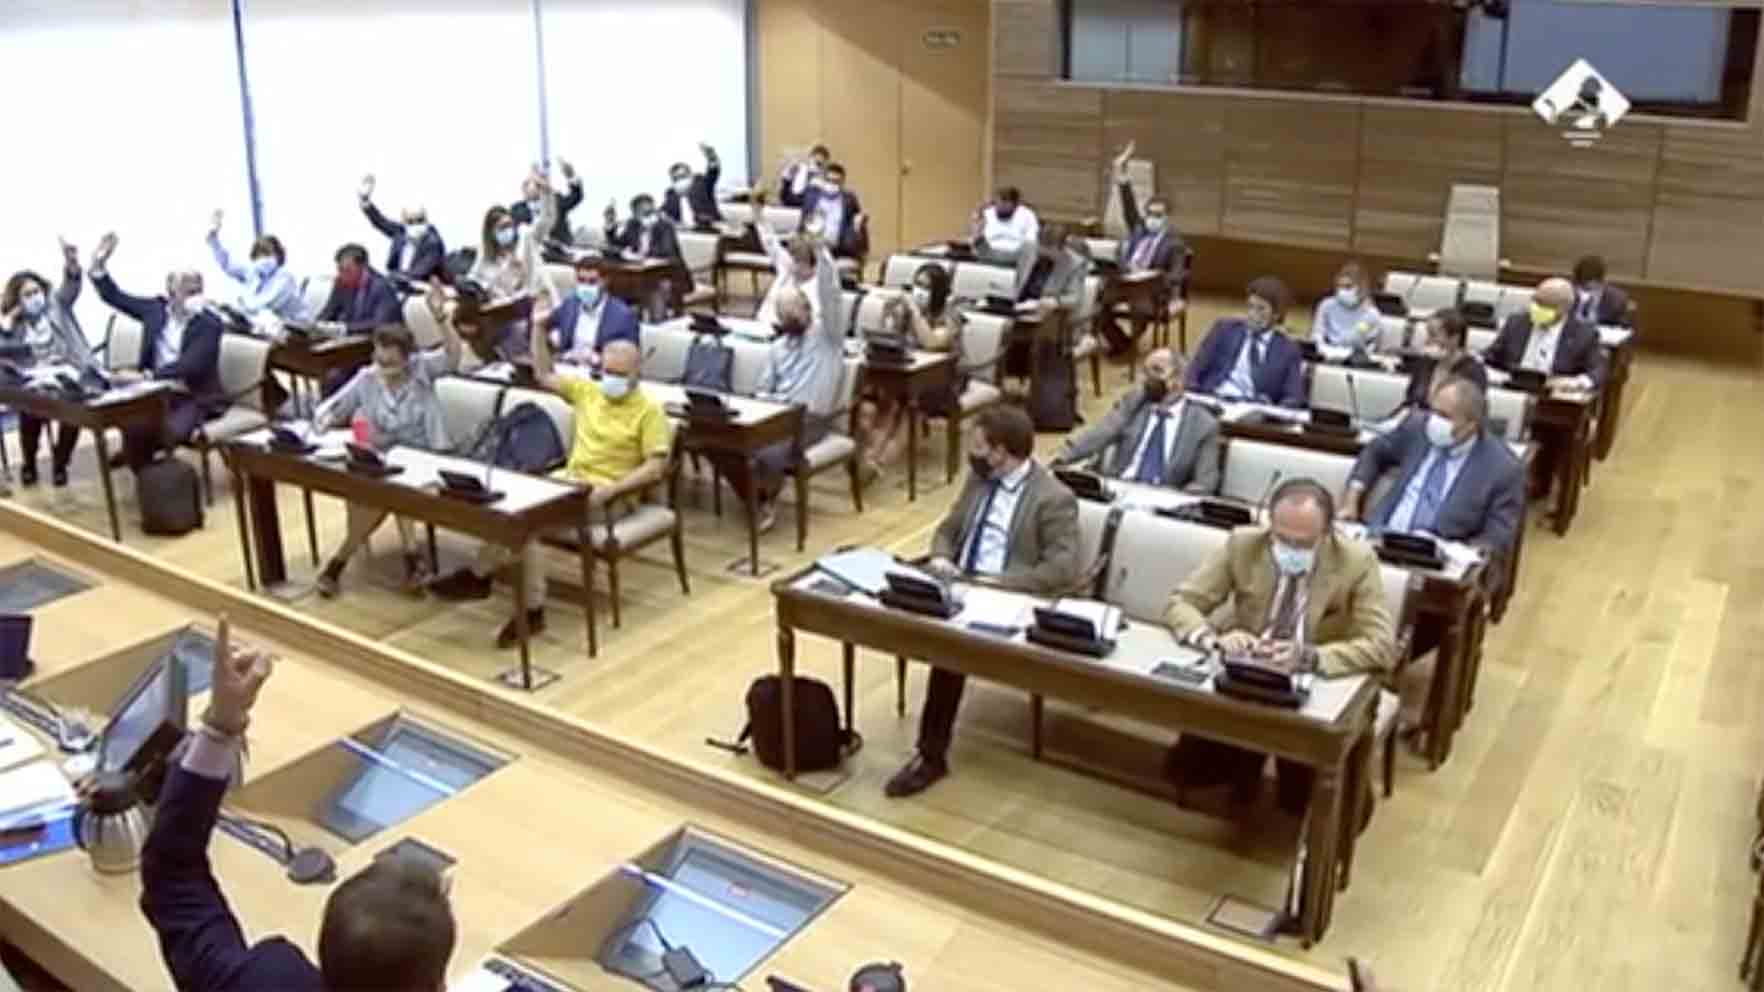 Imagen de la Comisión de Transición Ecológica y Reto Demográfico, no el momento exacto de la votación de la PNL sobre el trasvase.